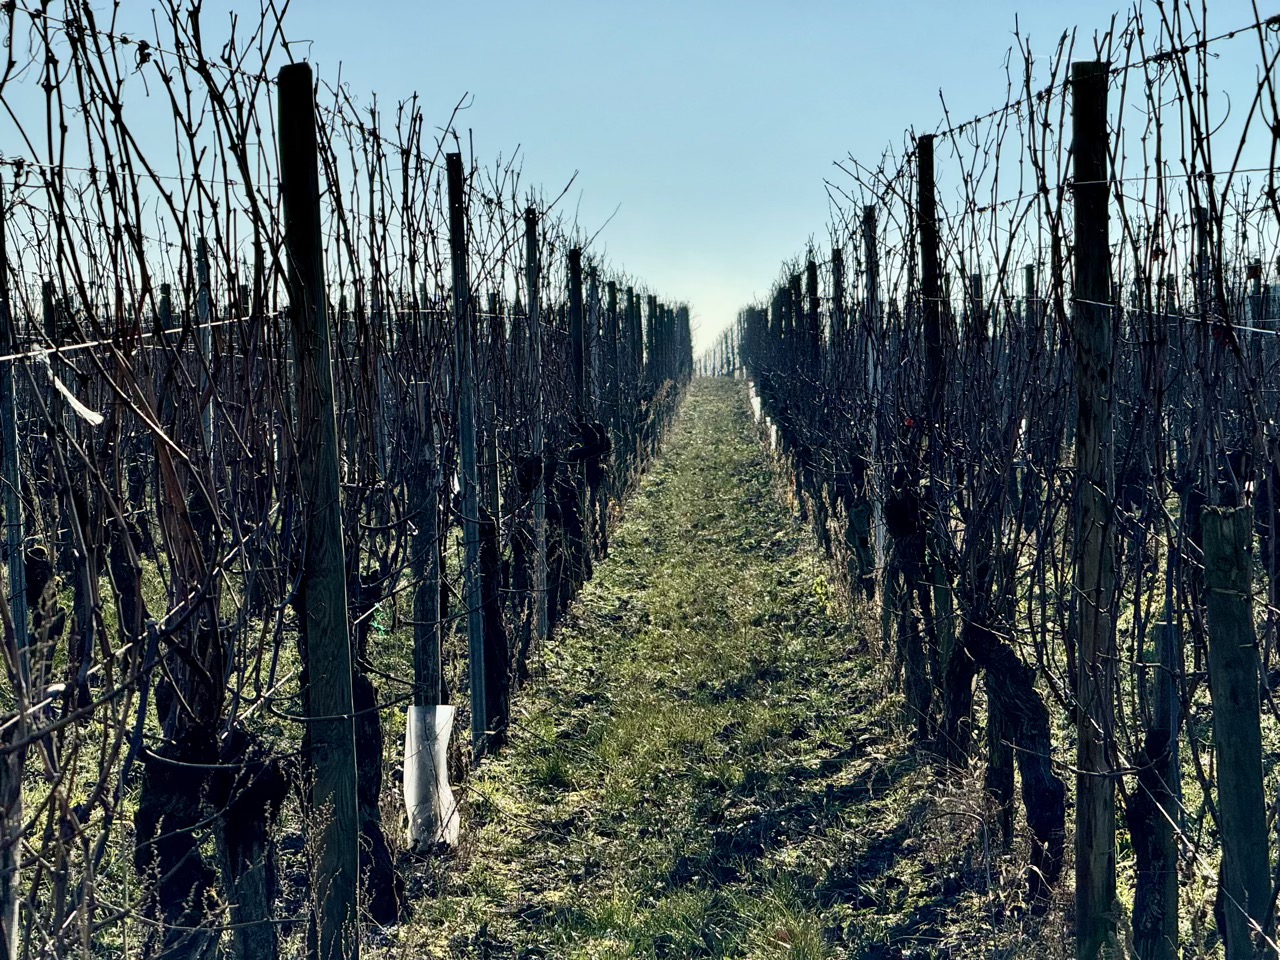 Eguisheim vineyard